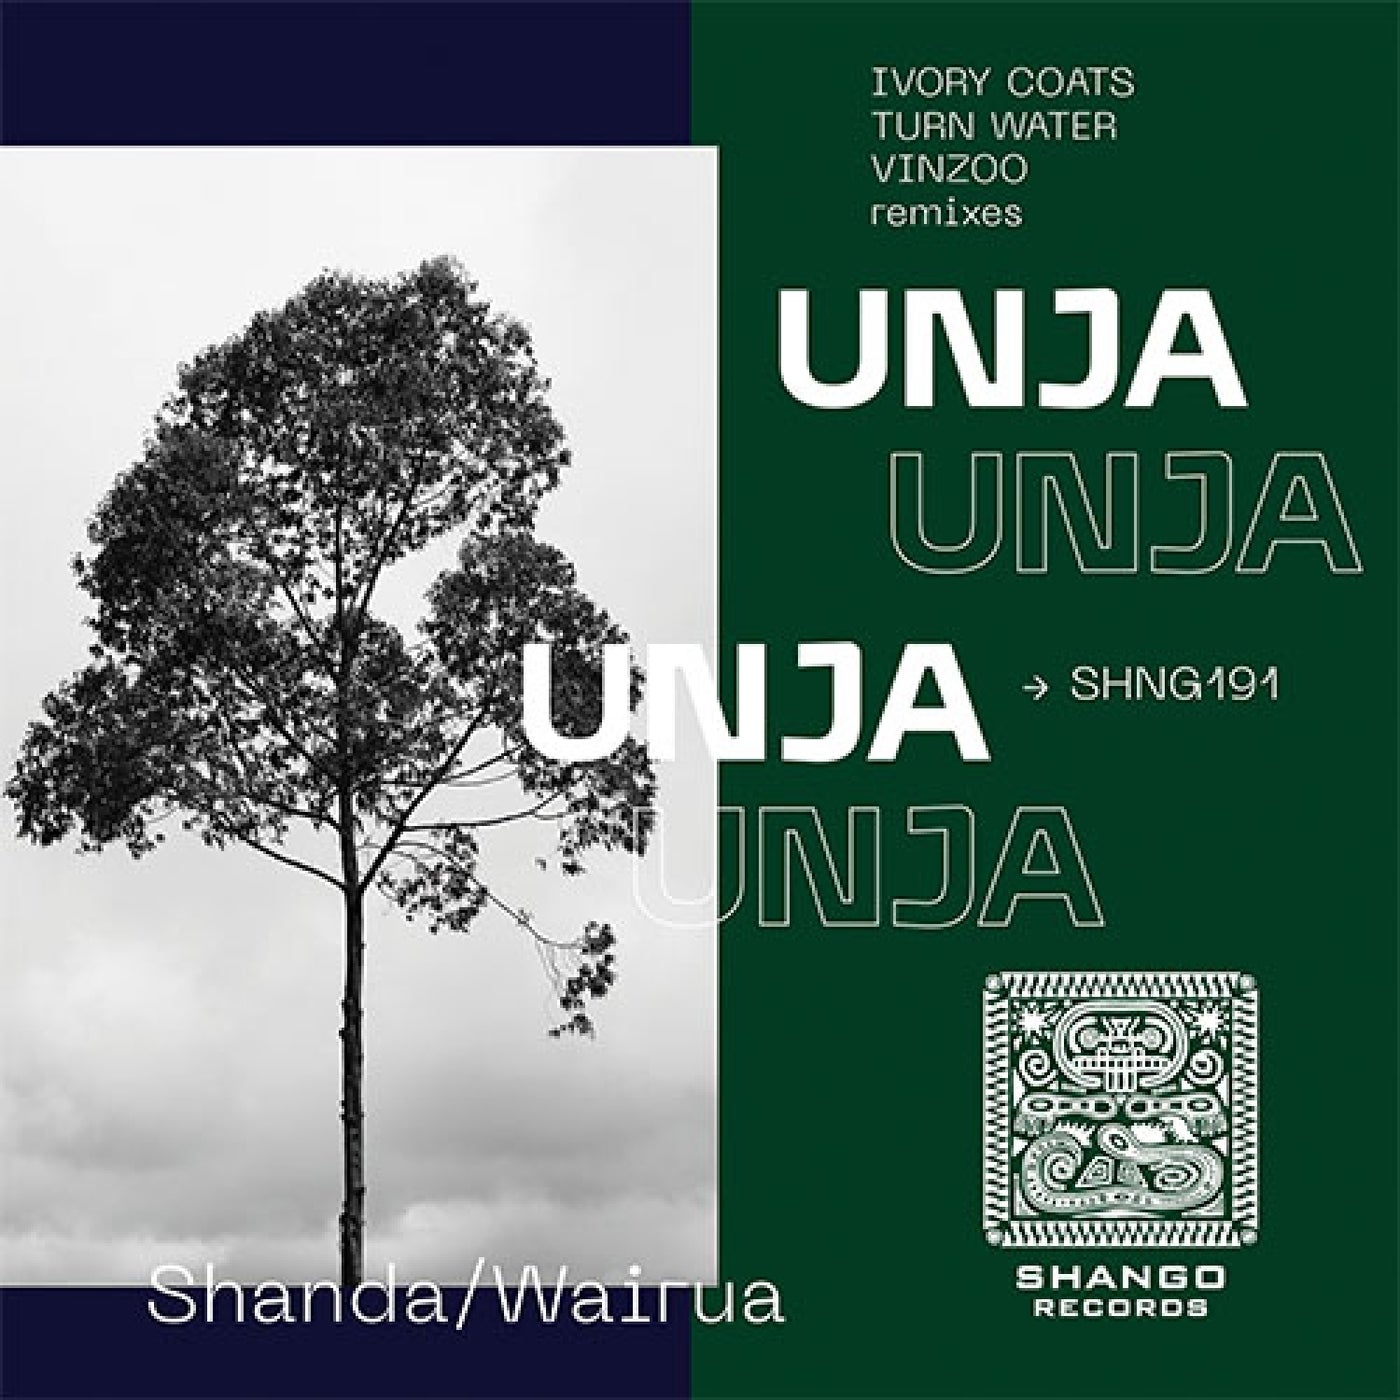 Unja, Vinzoo – Shanda/Wairua [SHNG191]